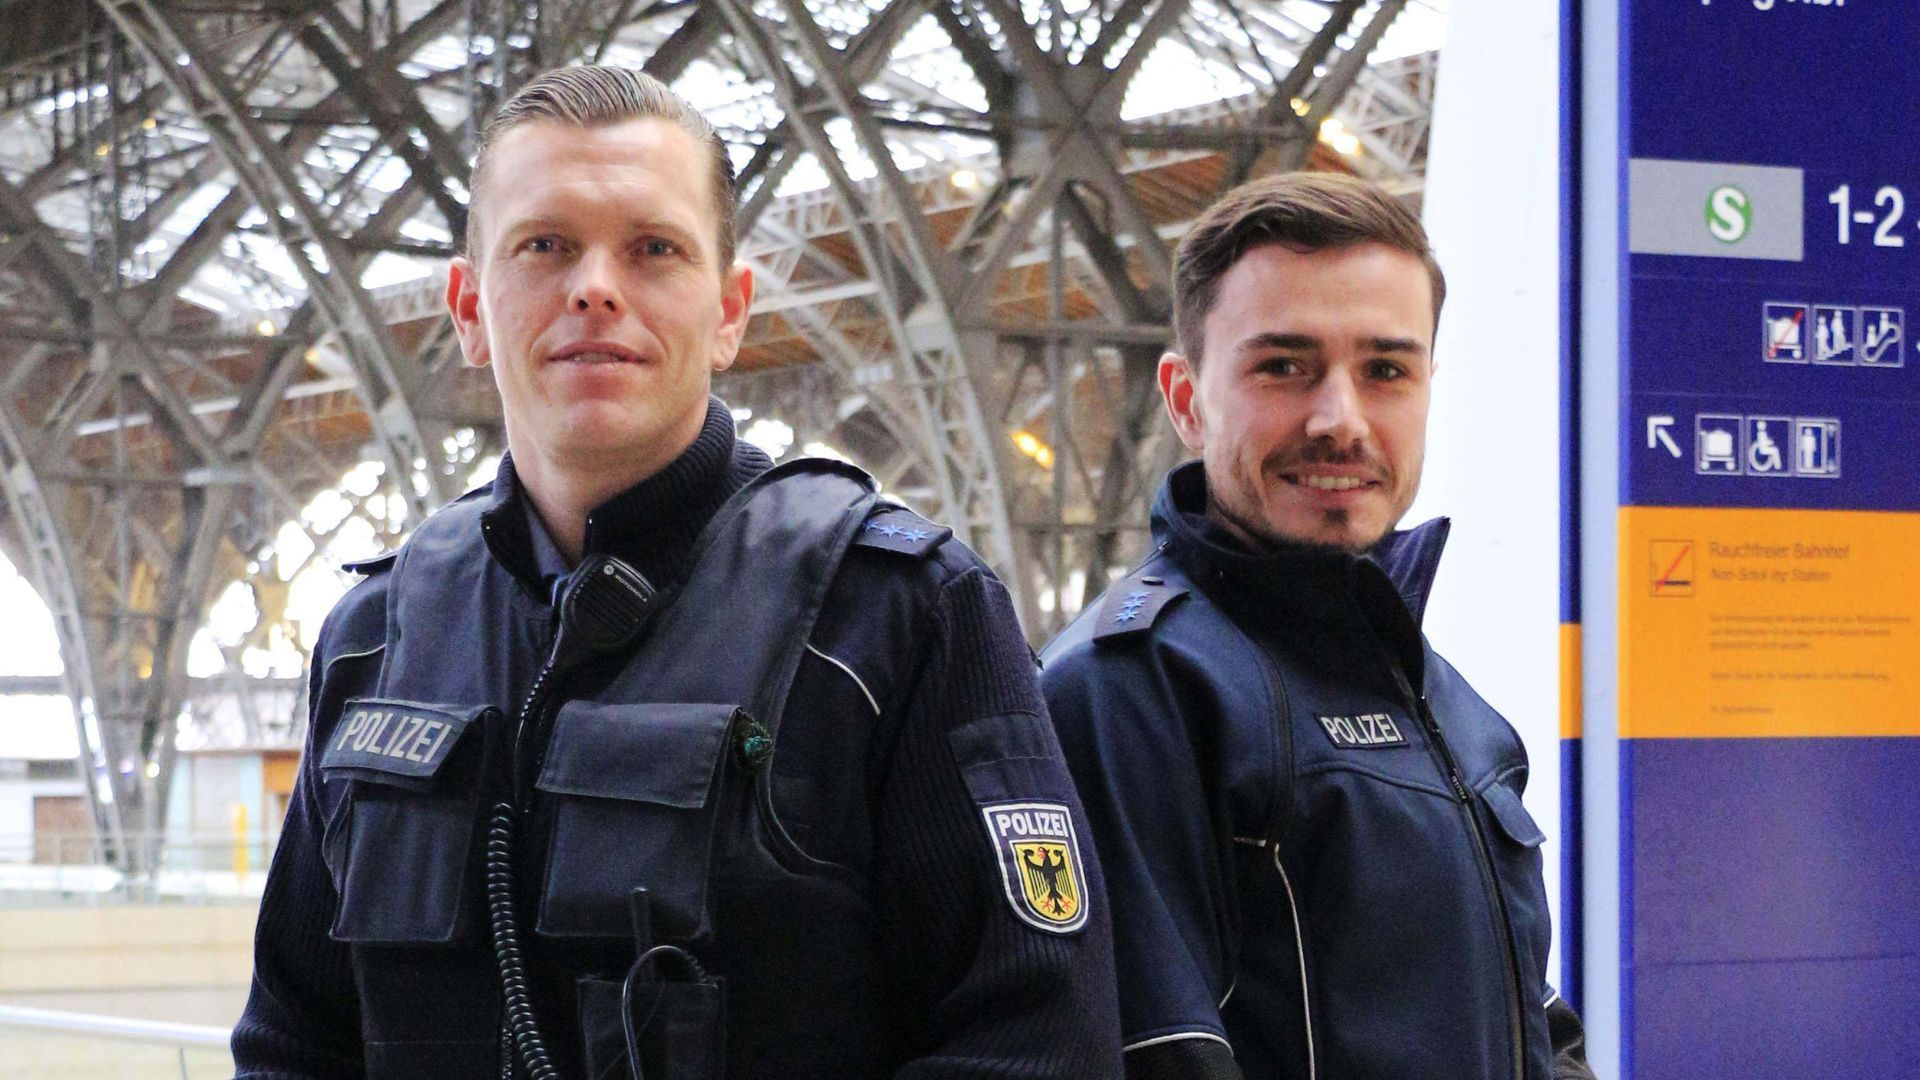 Thema u. a.: Zu schnell unterwegs - Verkehrspolizei Stuttgart